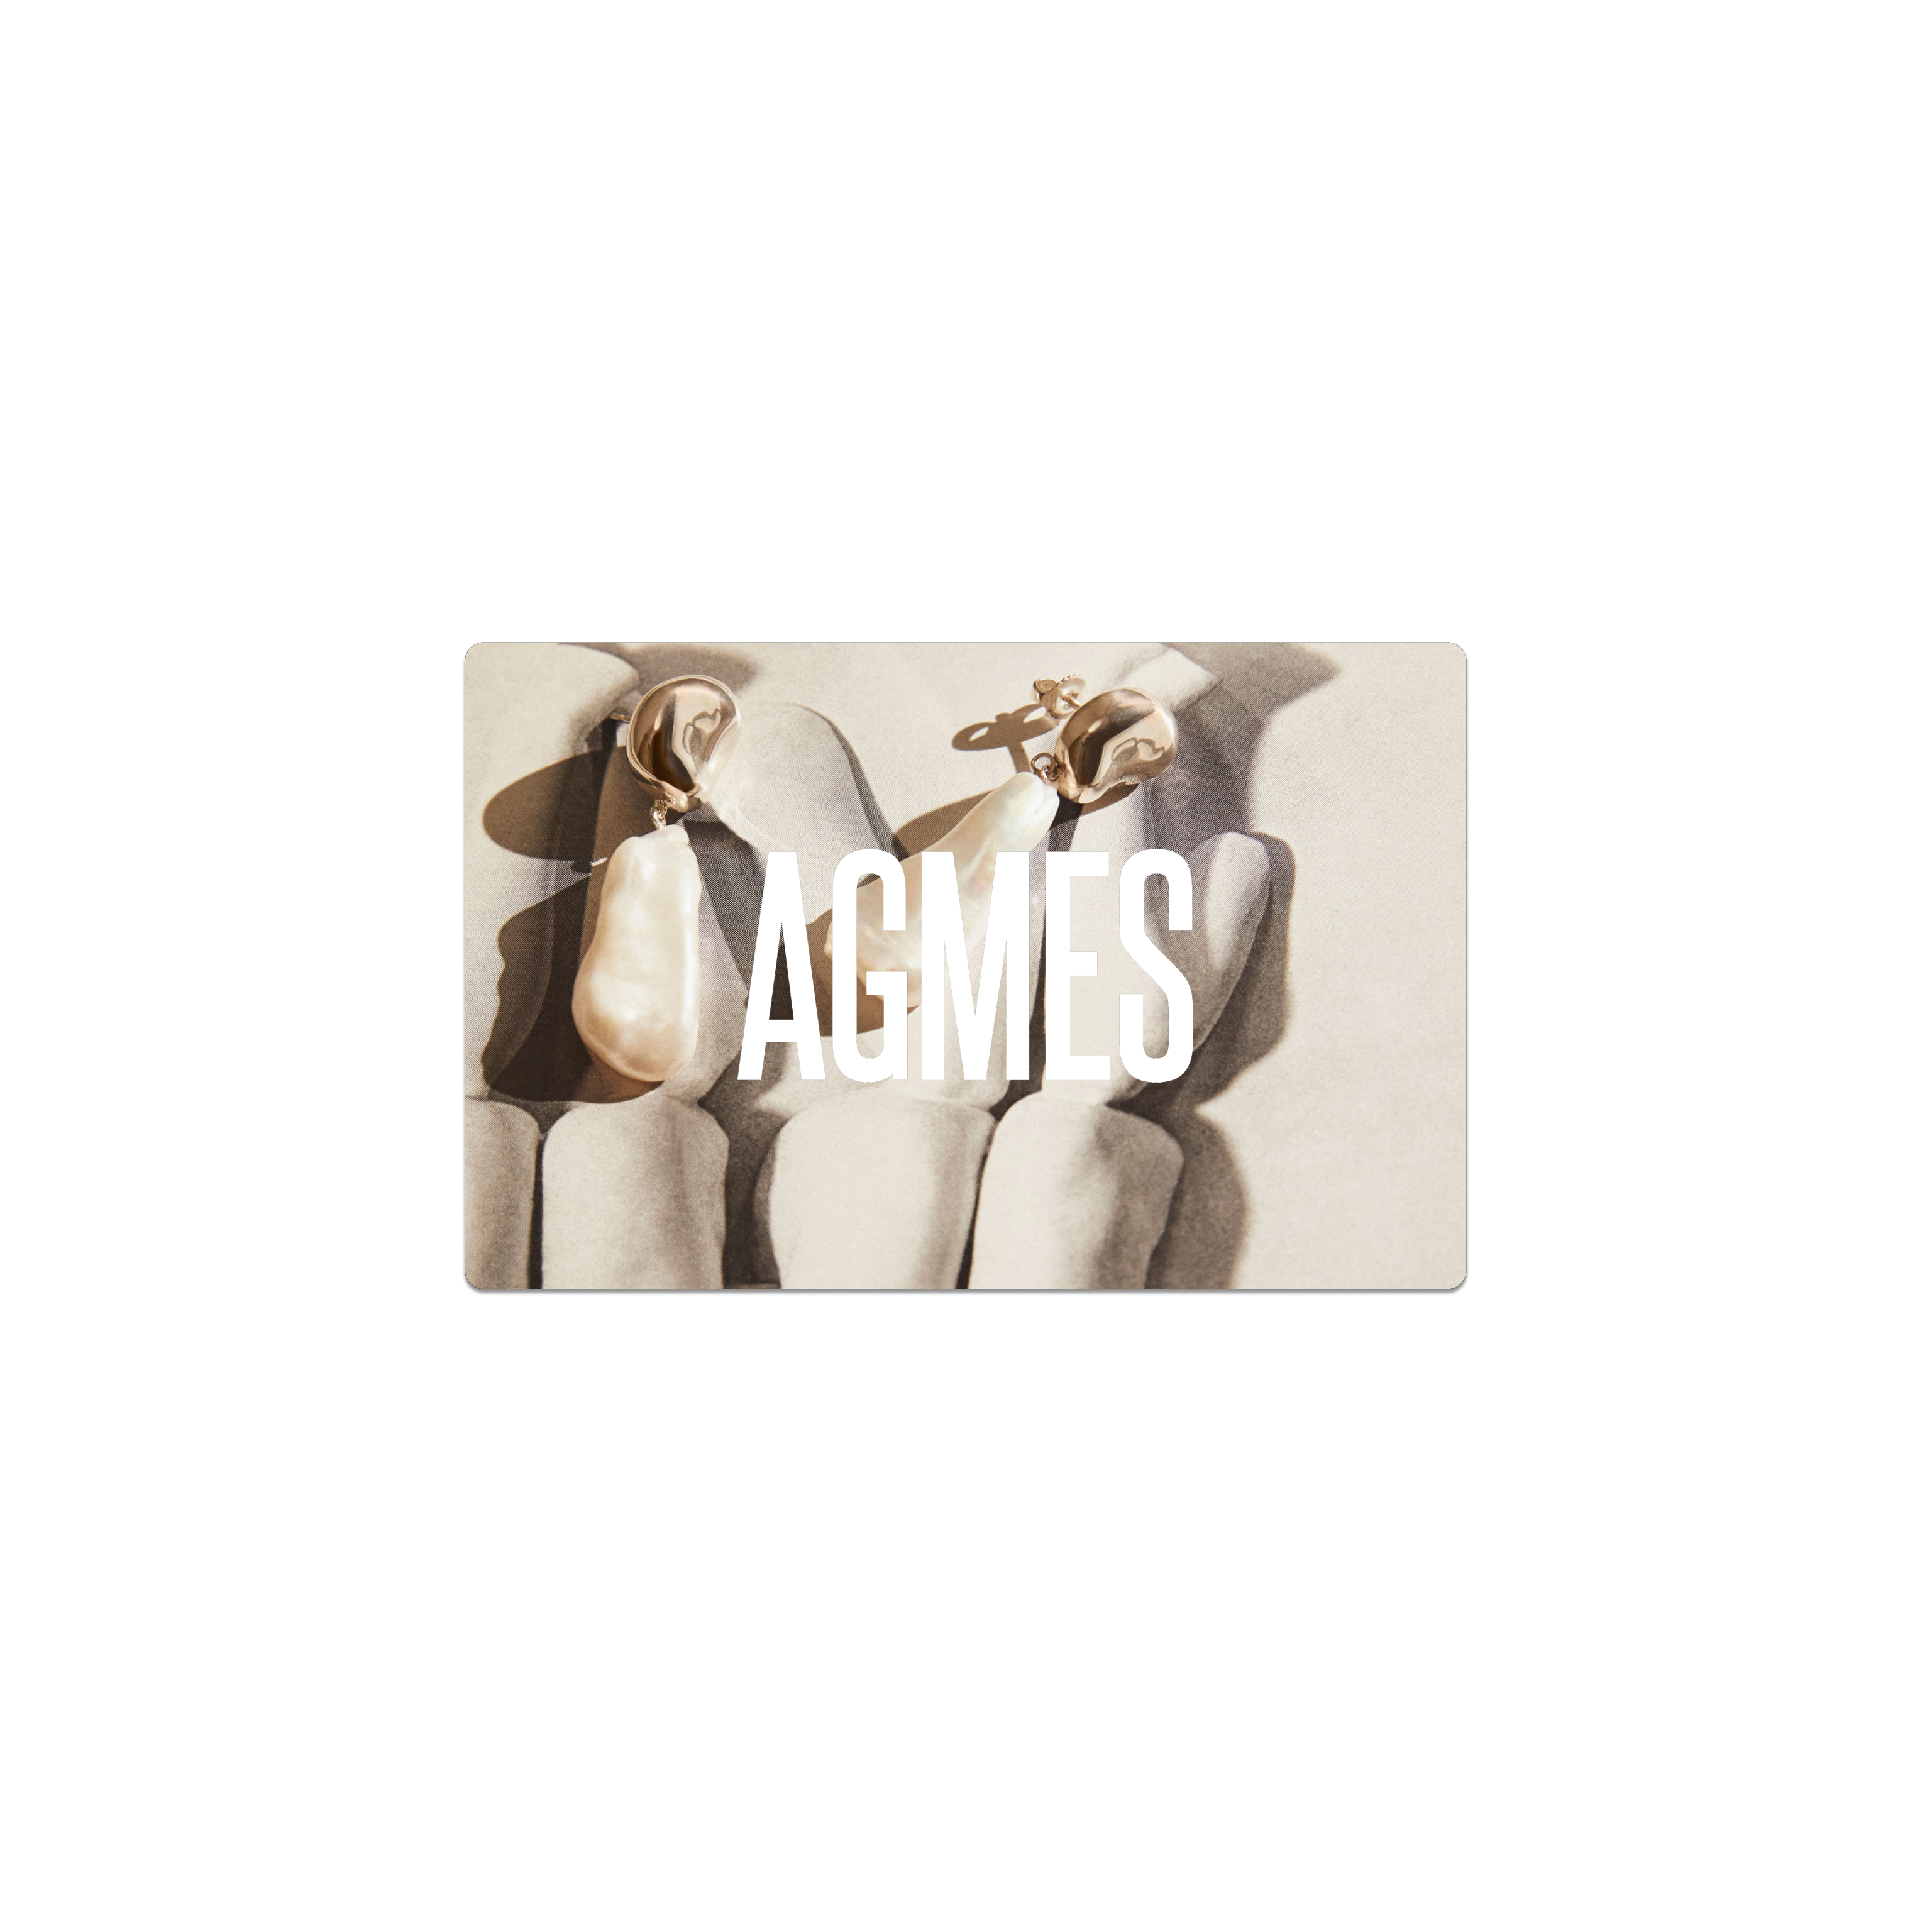 AGMES Gift Card